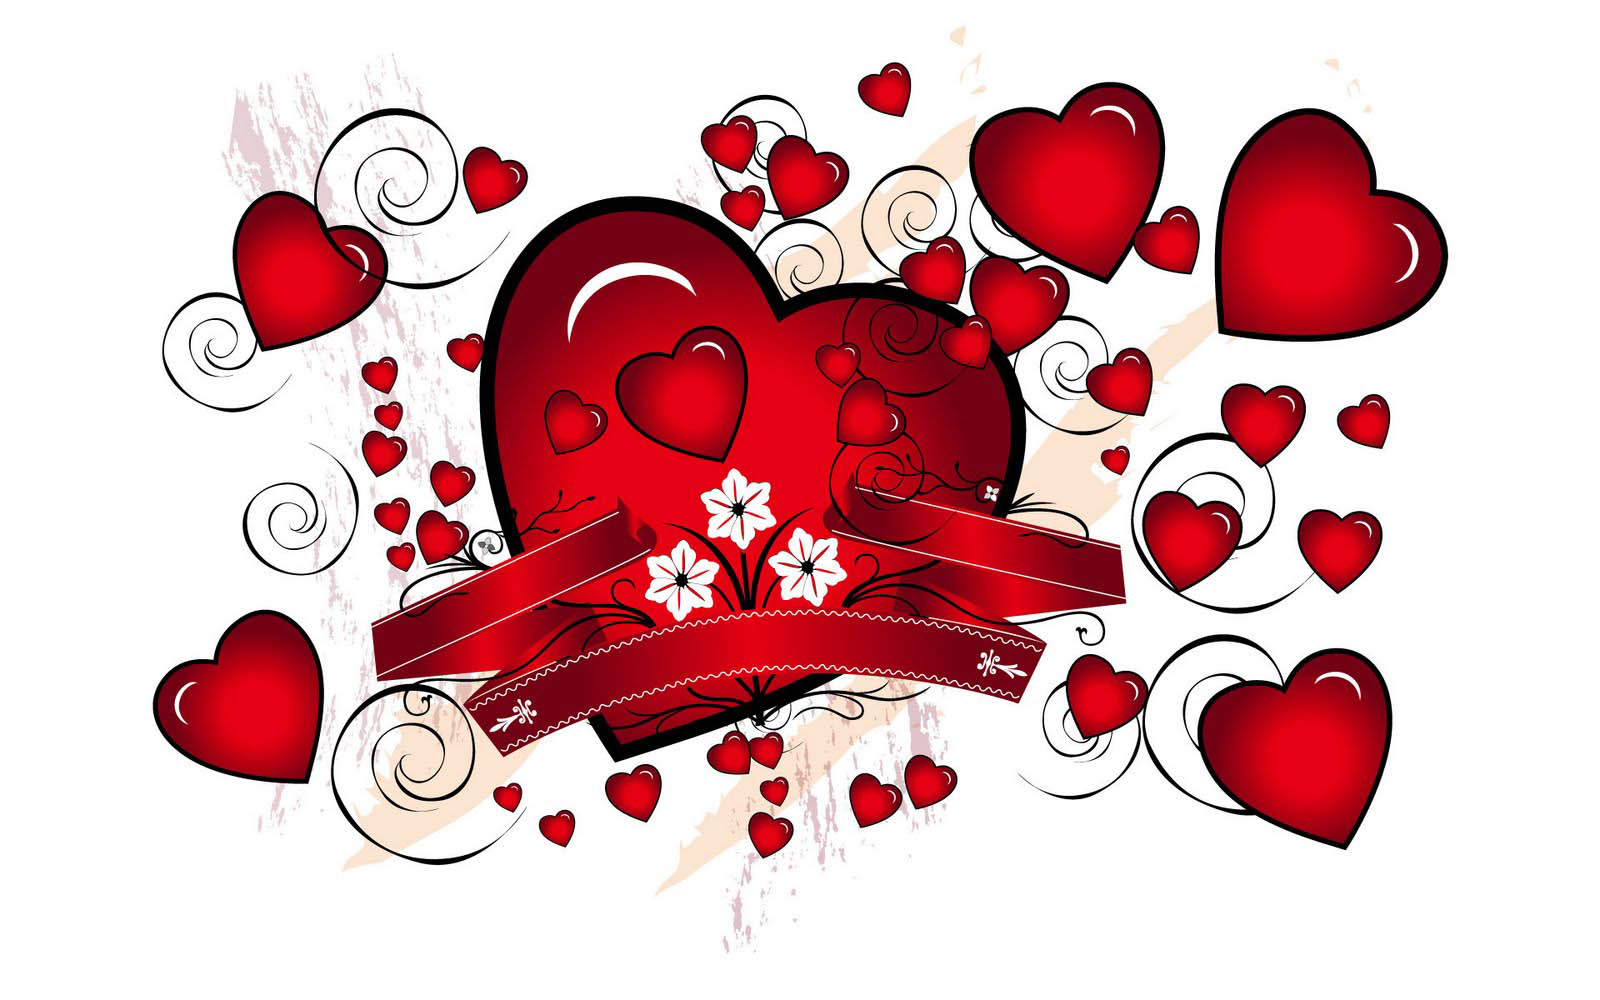 amo gli sfondi con i messaggi,cuore,rosso,amore,san valentino,cuore